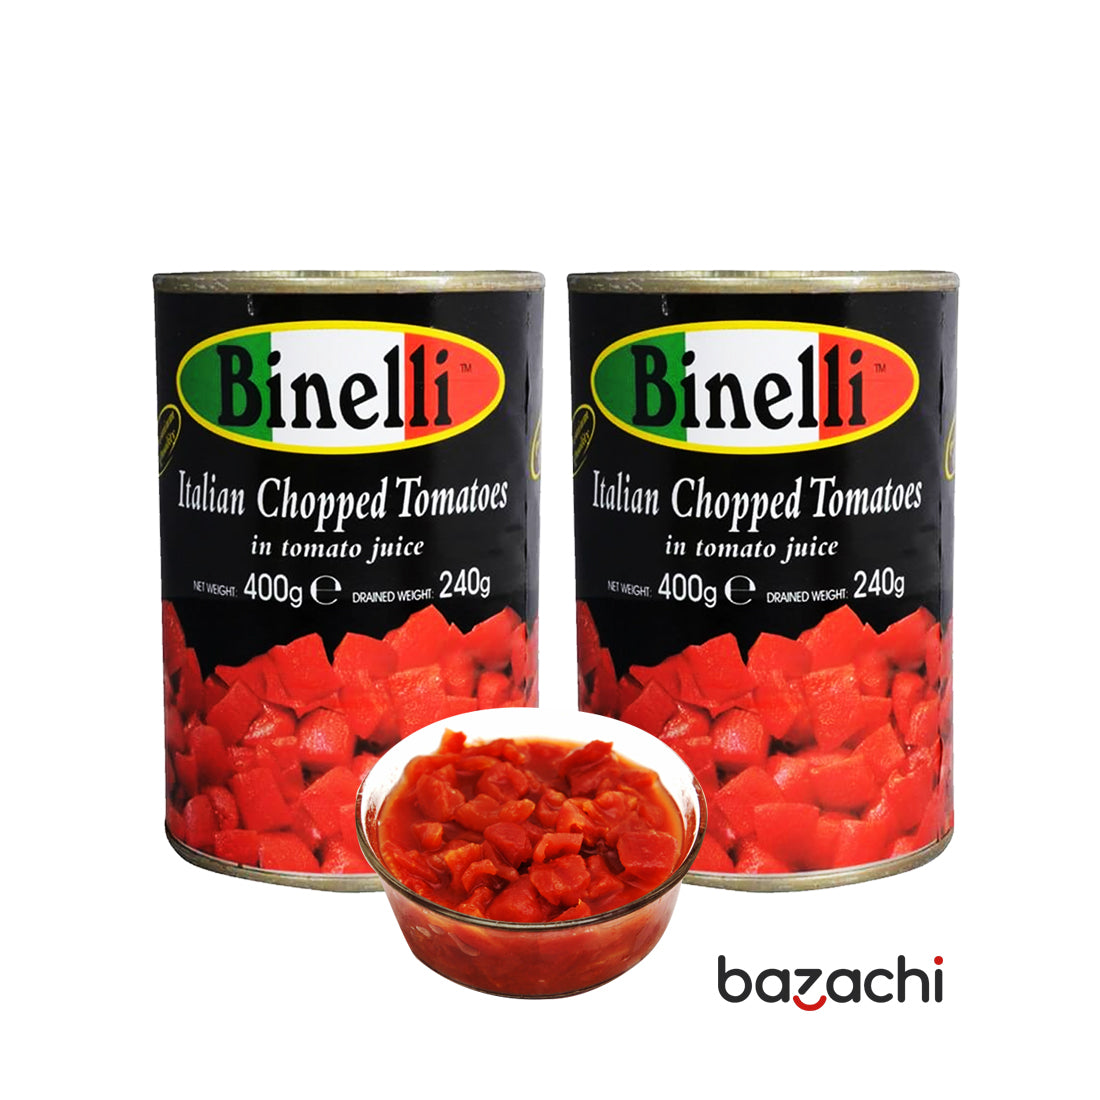 Binelli Italian Chopped Tomatoes 400g